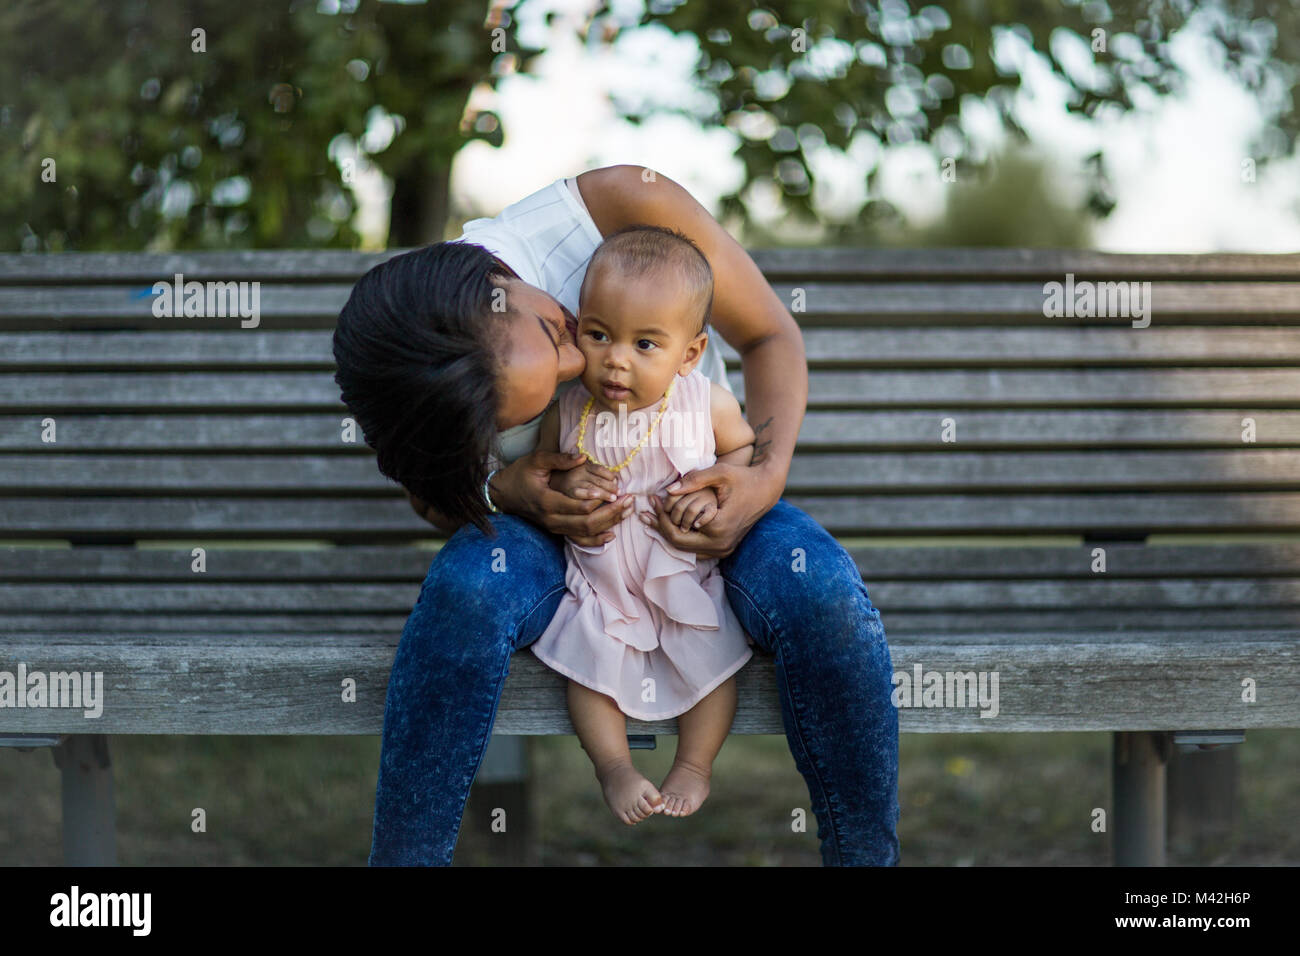 Mum kissing baby girl Stock Photo